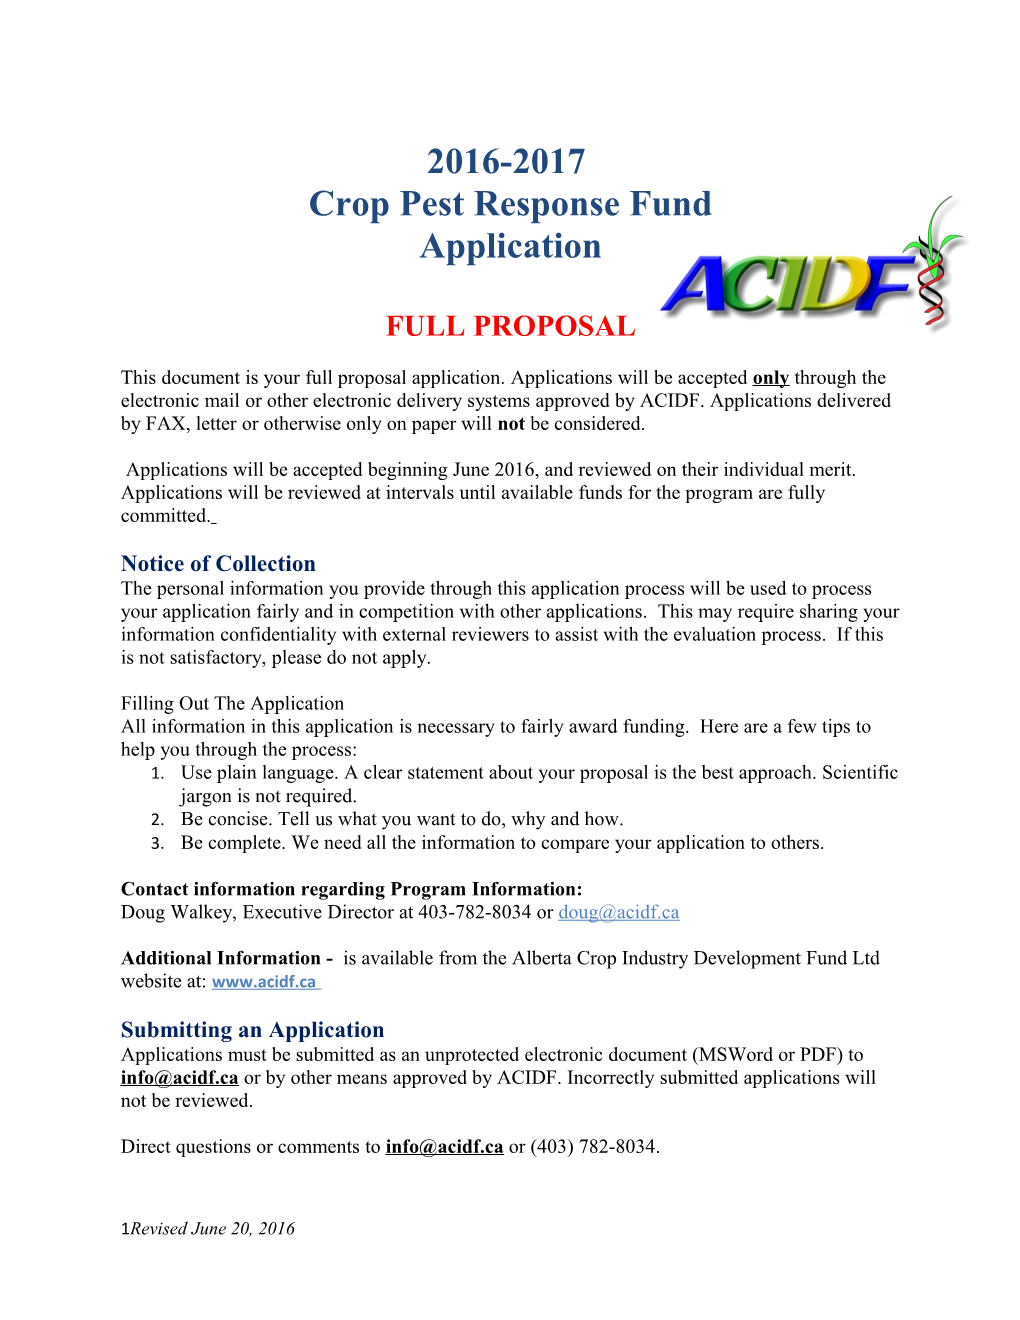 Crop Pest Response Fund